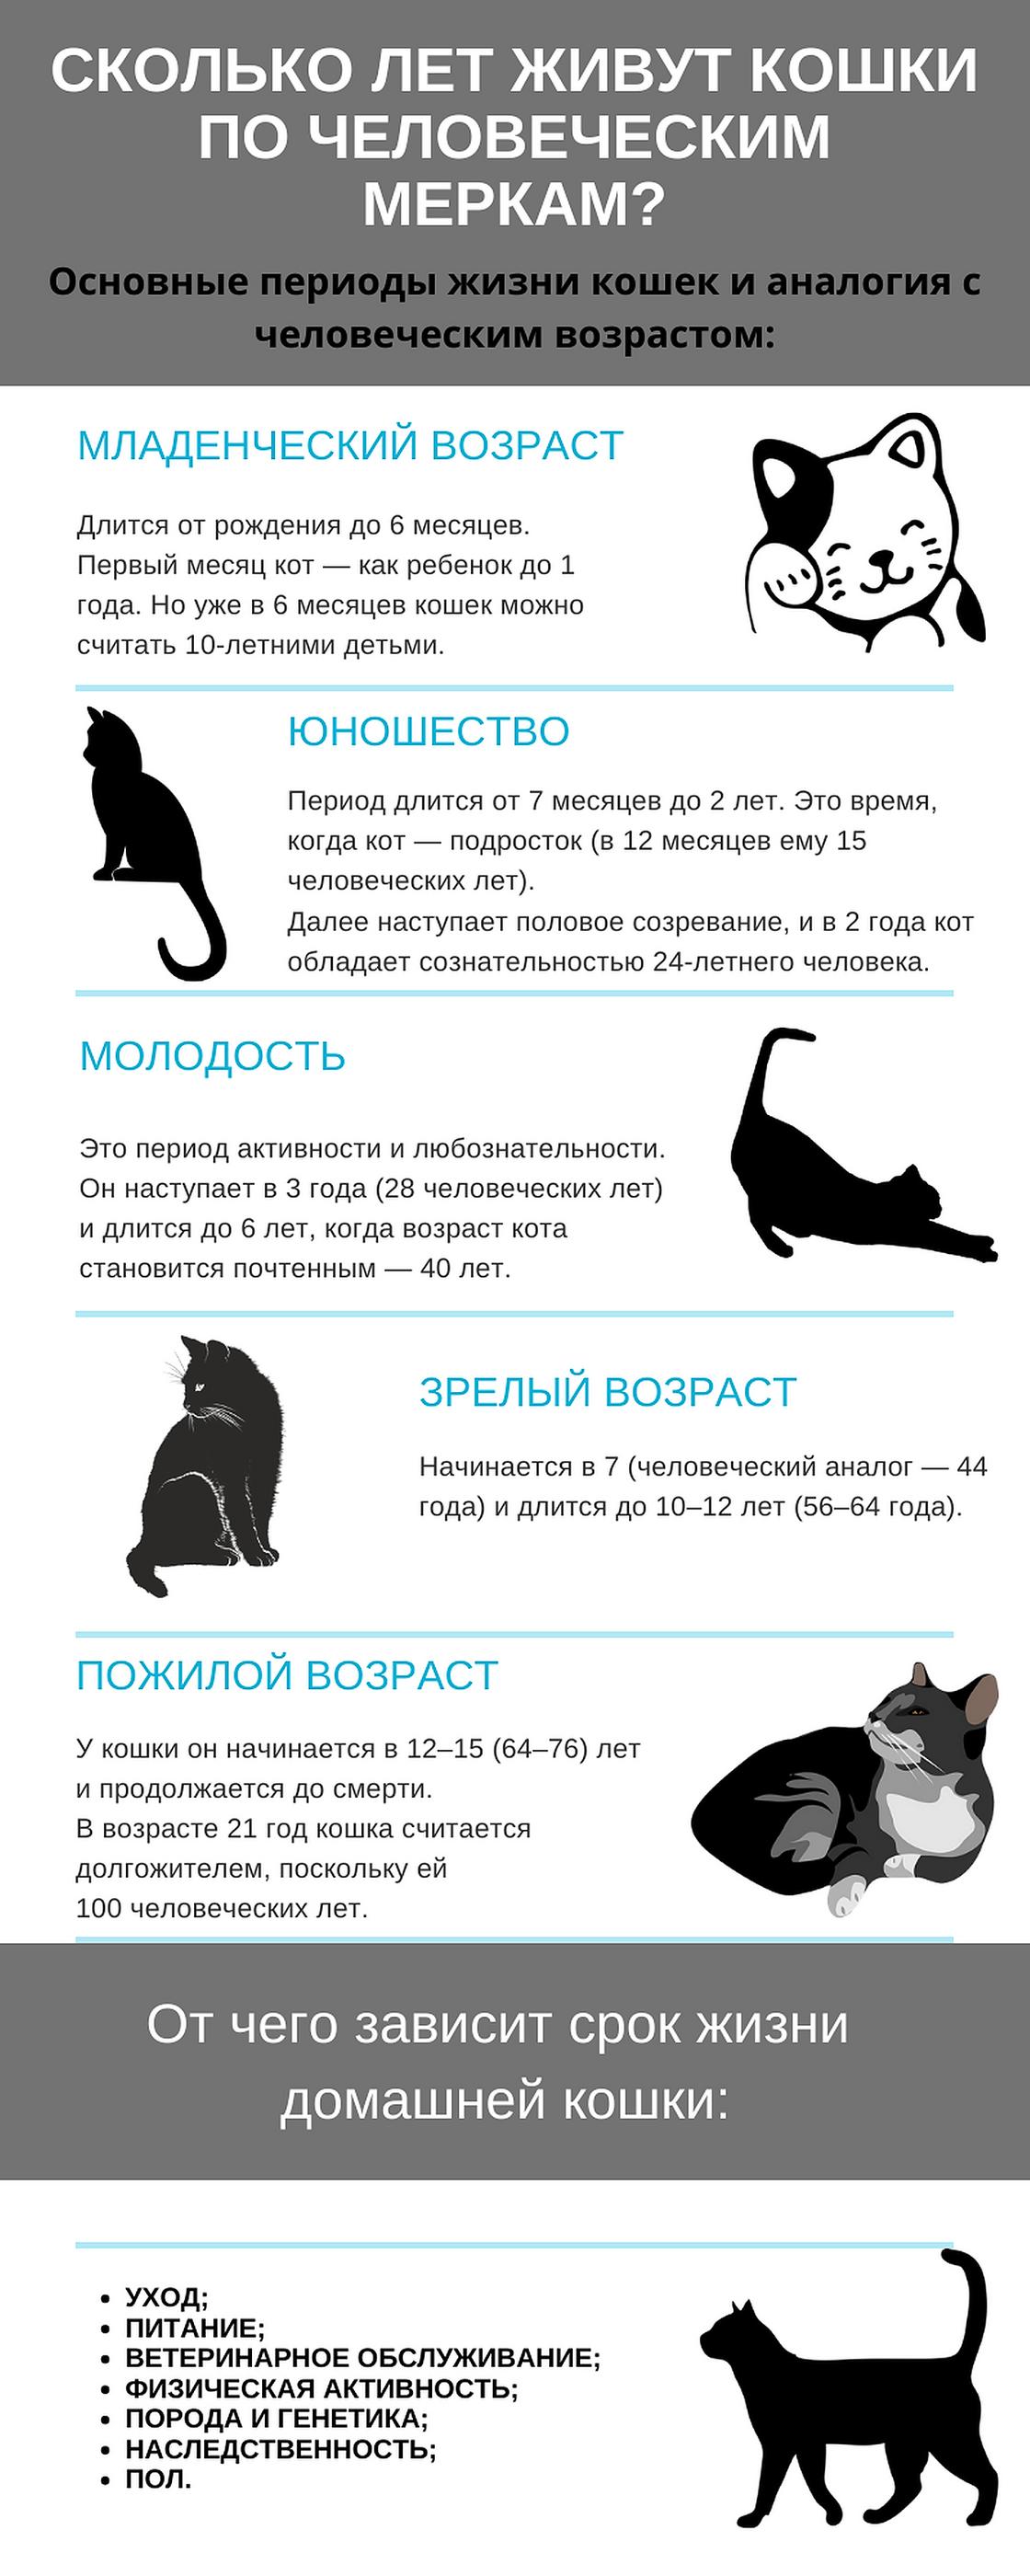 Сколько живут кошки: возраст по человеческим меркам и от чего зависит  продолжительность жизни